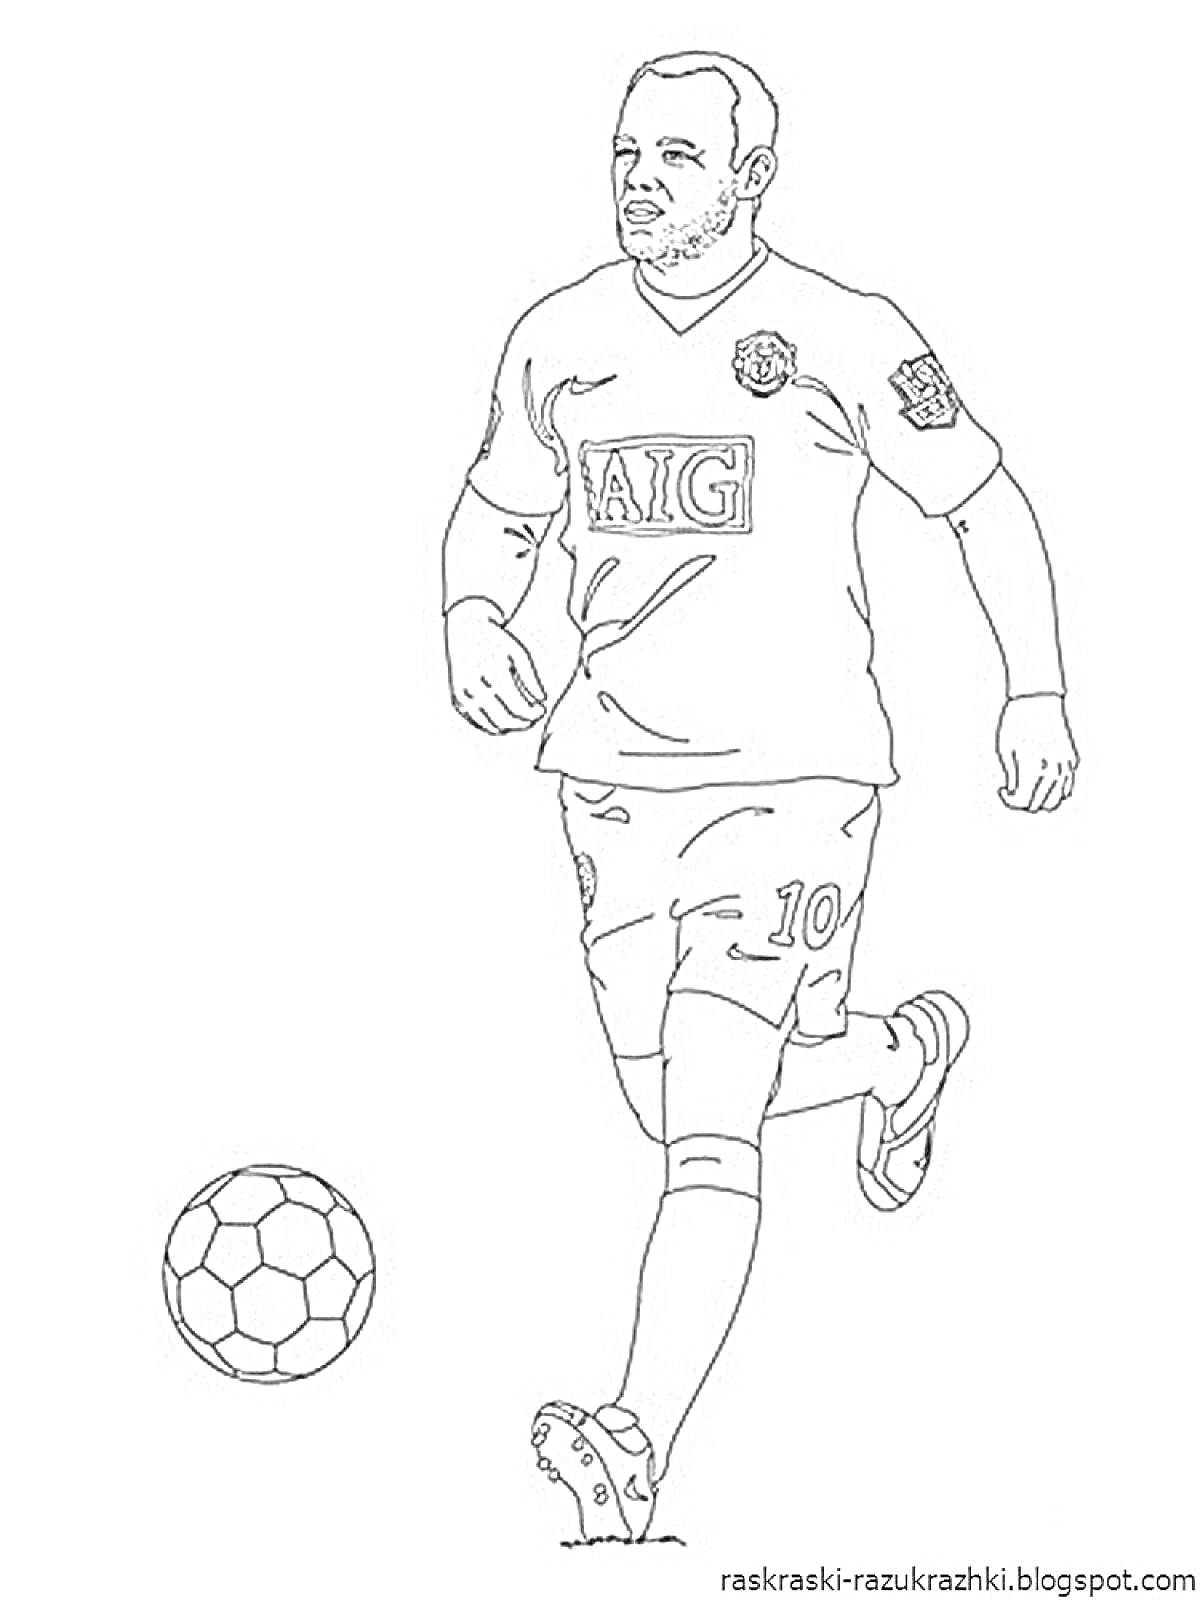 Футболист в футболке с логотипом AIG и номером 10, бежит с мячом